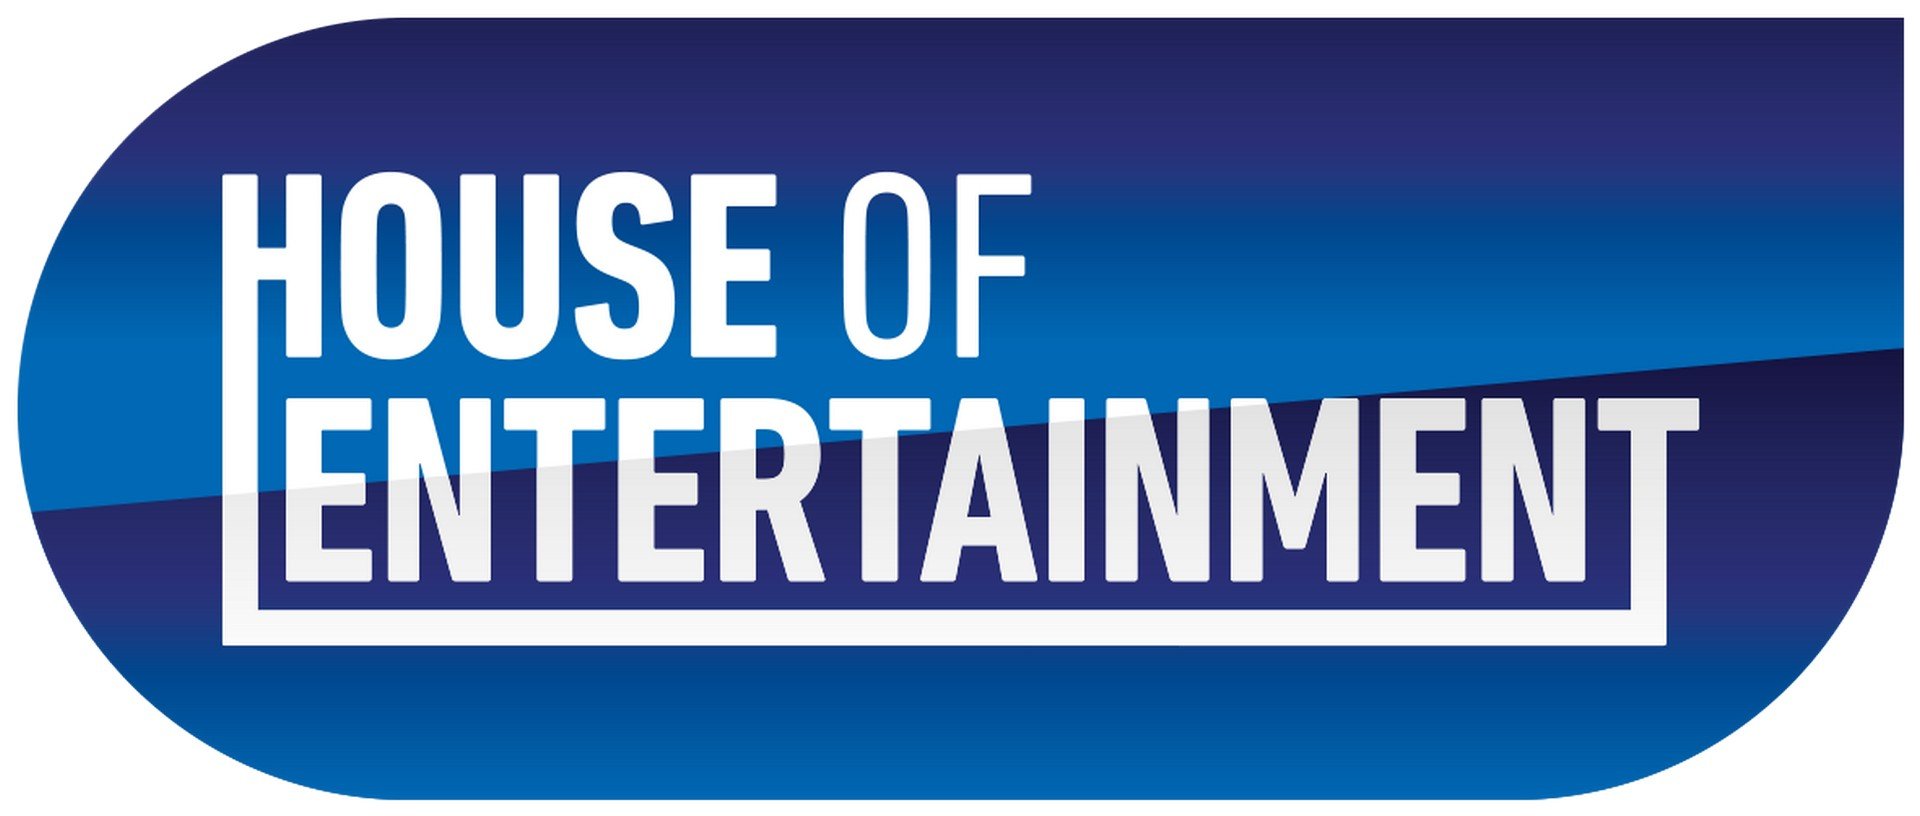 Joke van de Velde tekent bij House of Entertainment - Logo House Of Entertainment